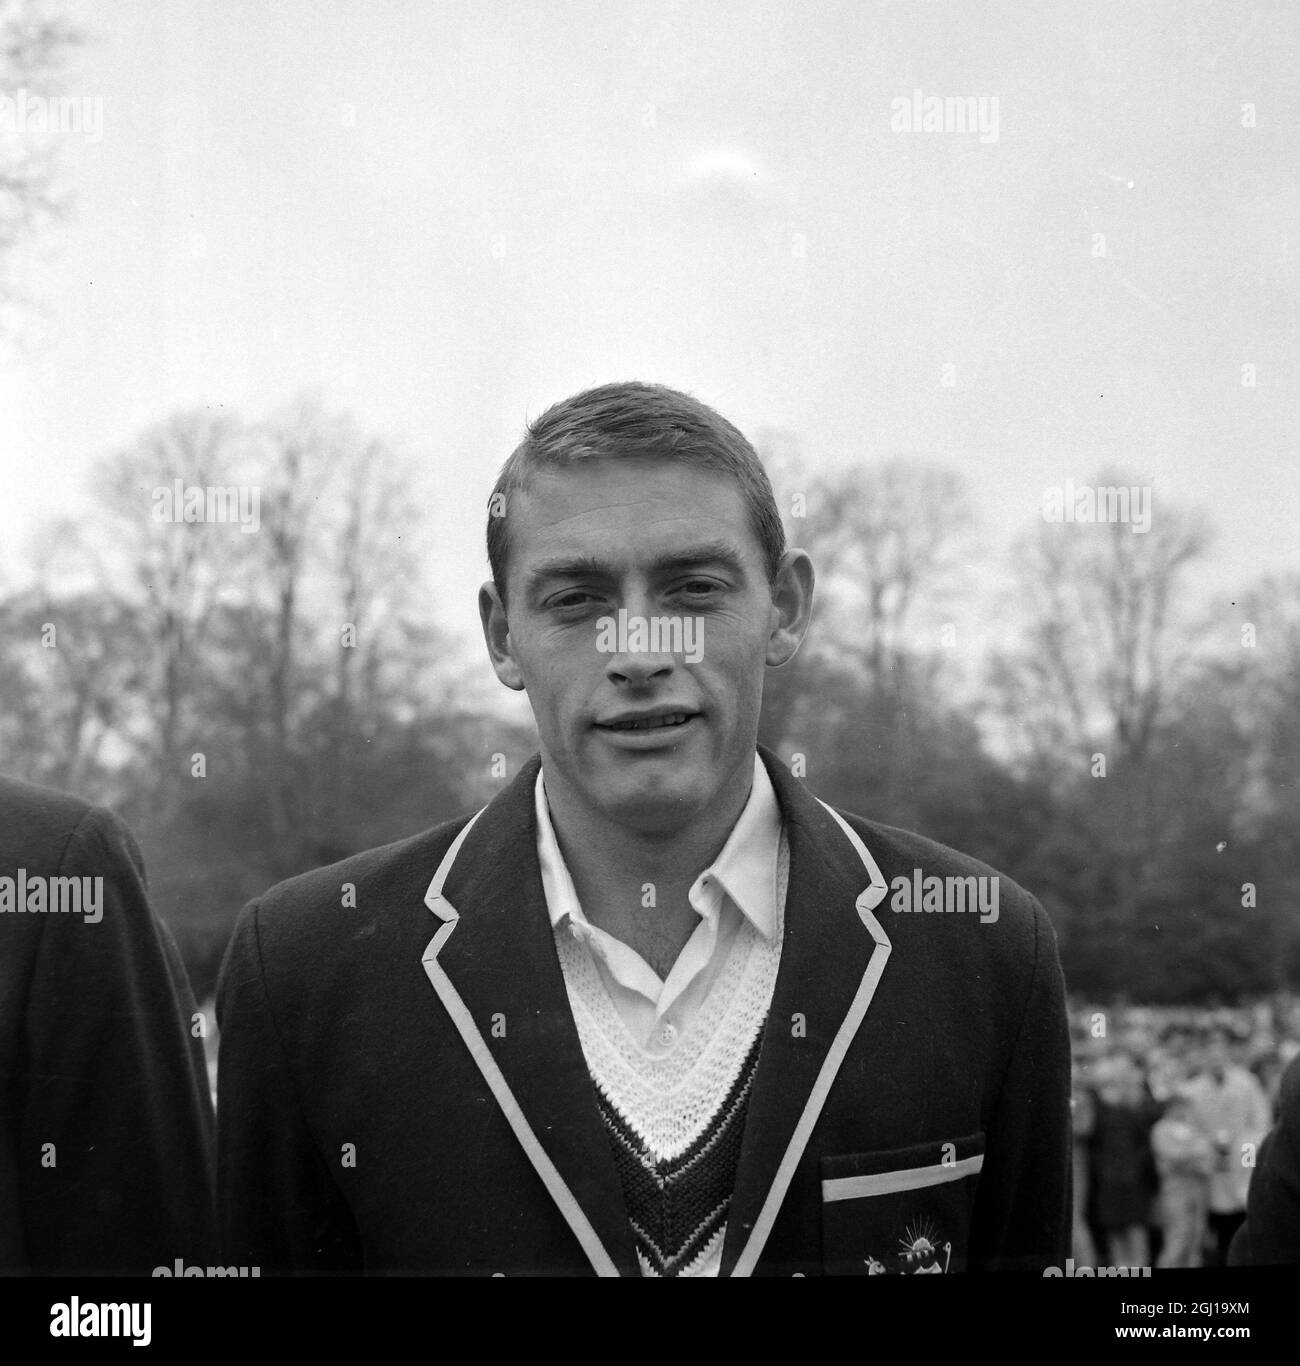 JACK POTTER À ARUNDEL - PORTRAIT DU JOUEUR AUSTRALIEN DE CRICKET ; 27 AVRIL 1964 Banque D'Images